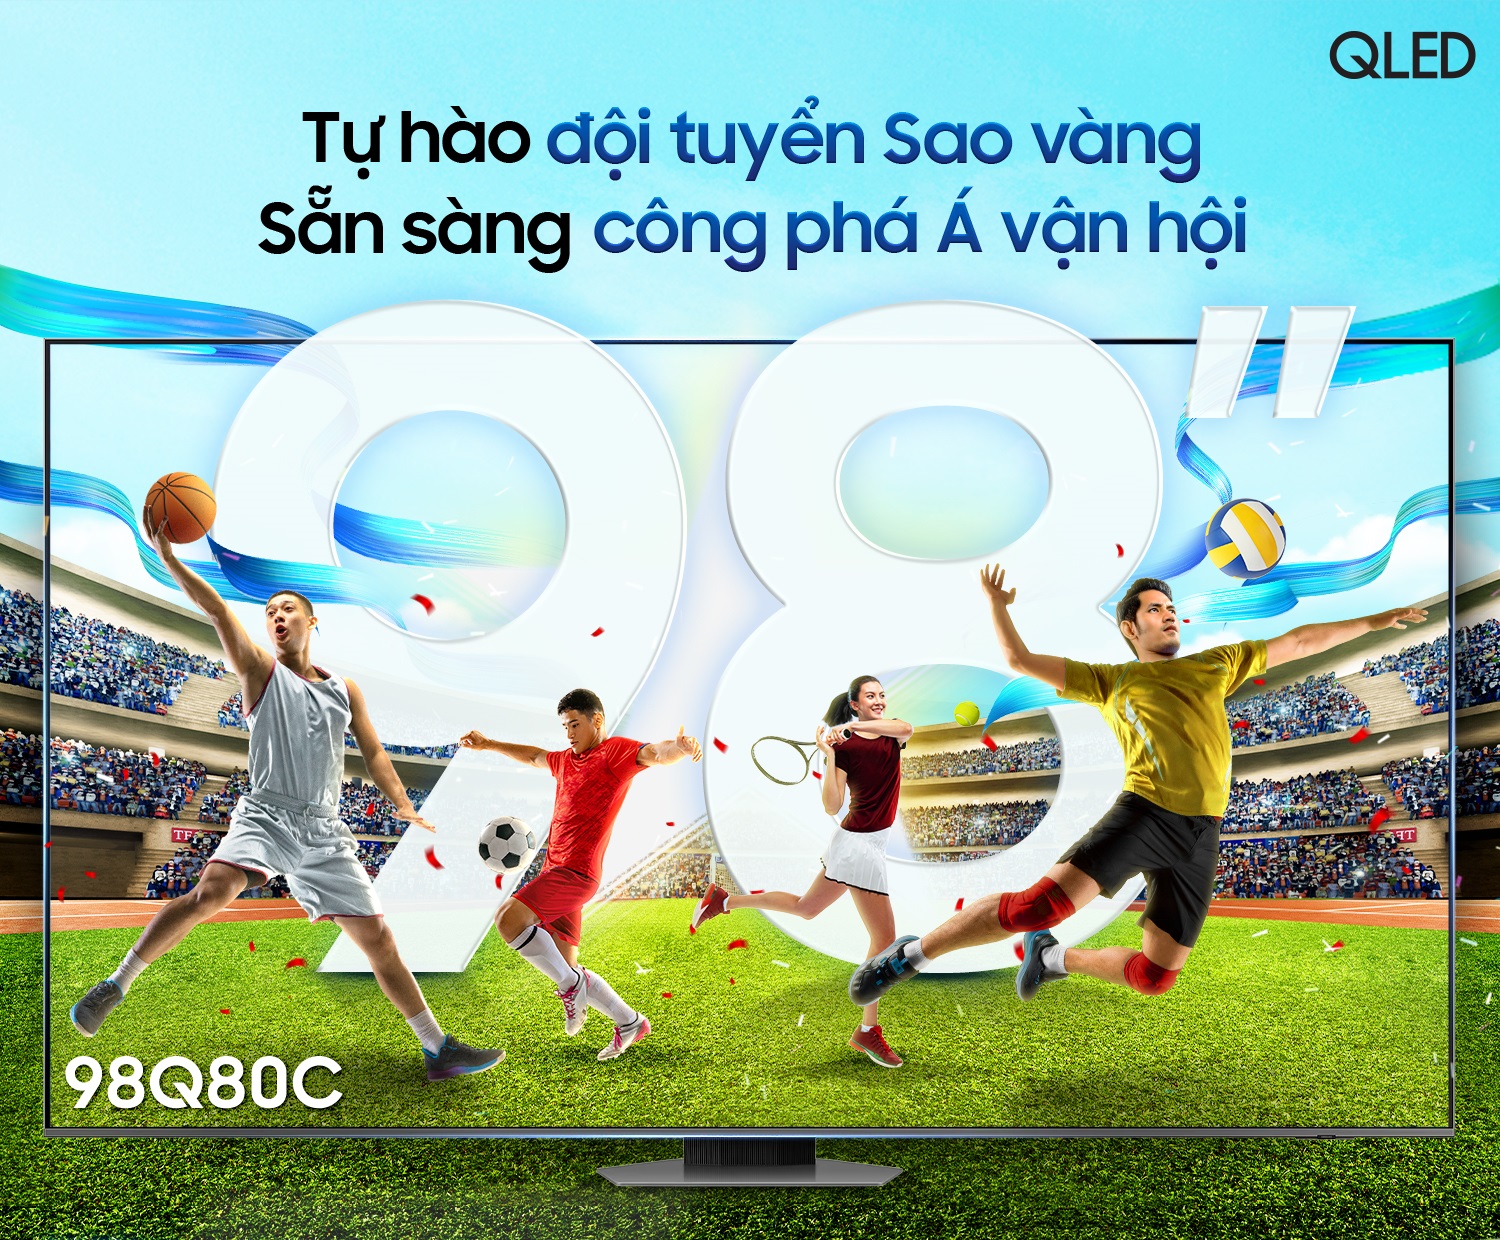 Thưởng thức ASIAD đẳng cấp và khác biệt trên TV Samsung màn hình lớn - Ảnh 1.